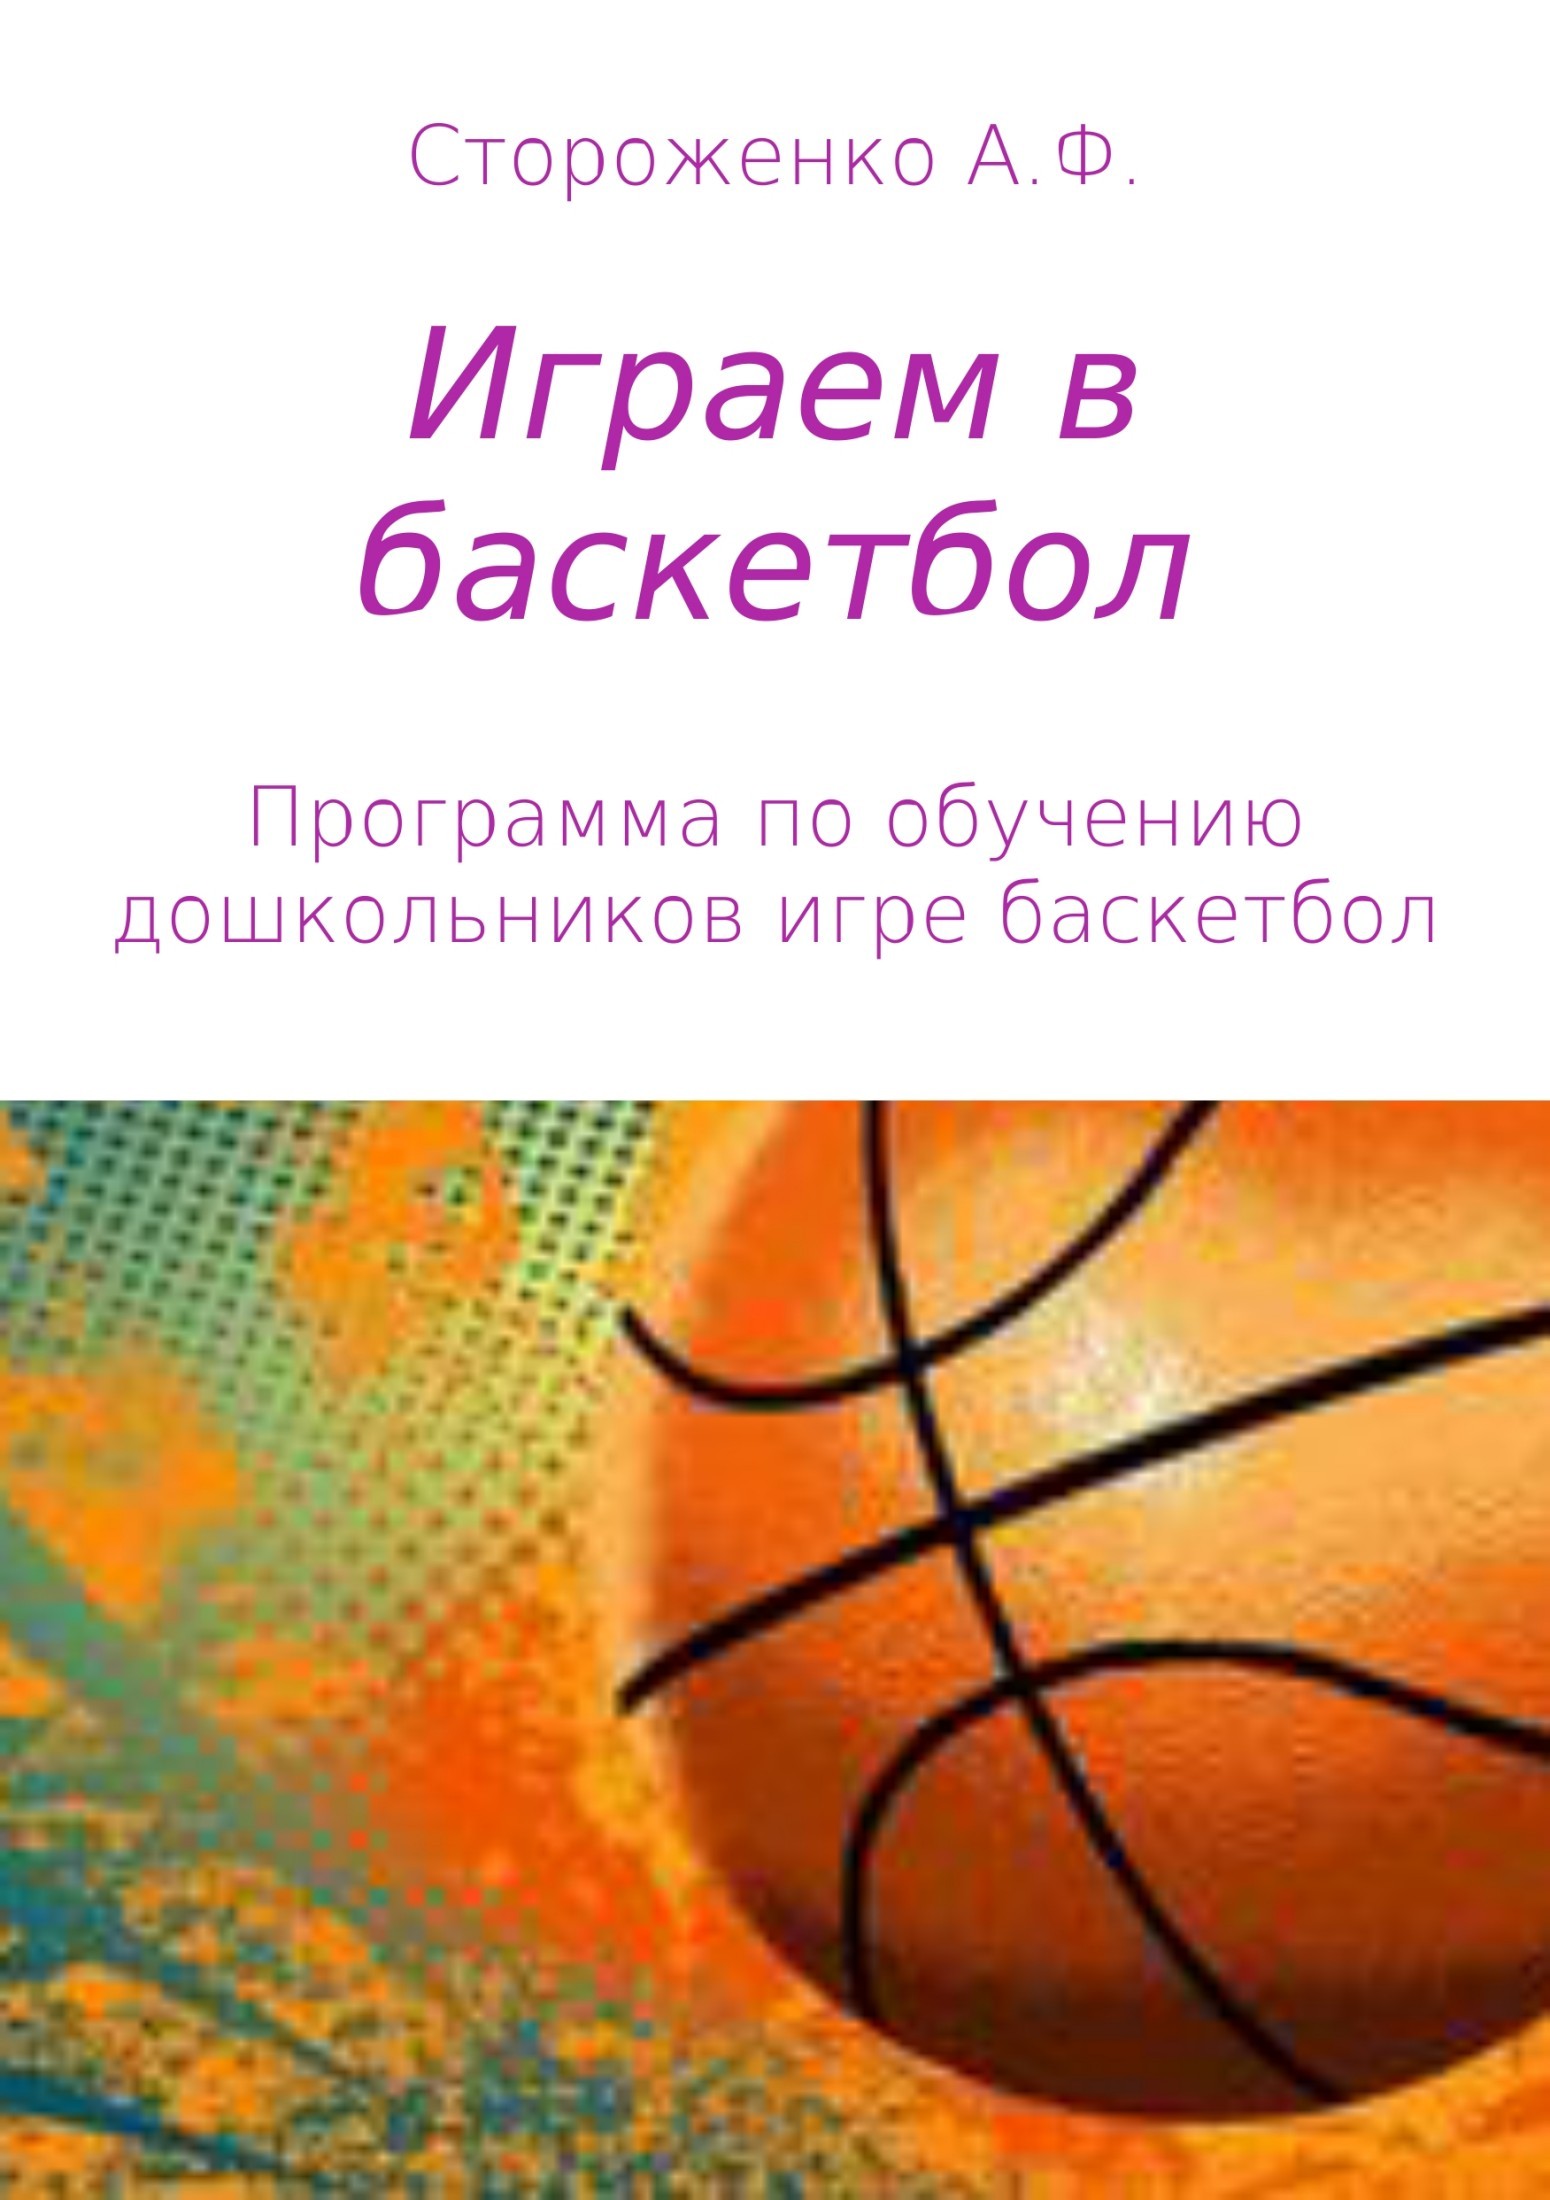 Книга Играем в баскетбол из серии , созданная Альфия Стороженко, может относится к жанру Педагогика. Стоимость книги Играем в баскетбол  с идентификатором 28751439 составляет 99.90 руб.